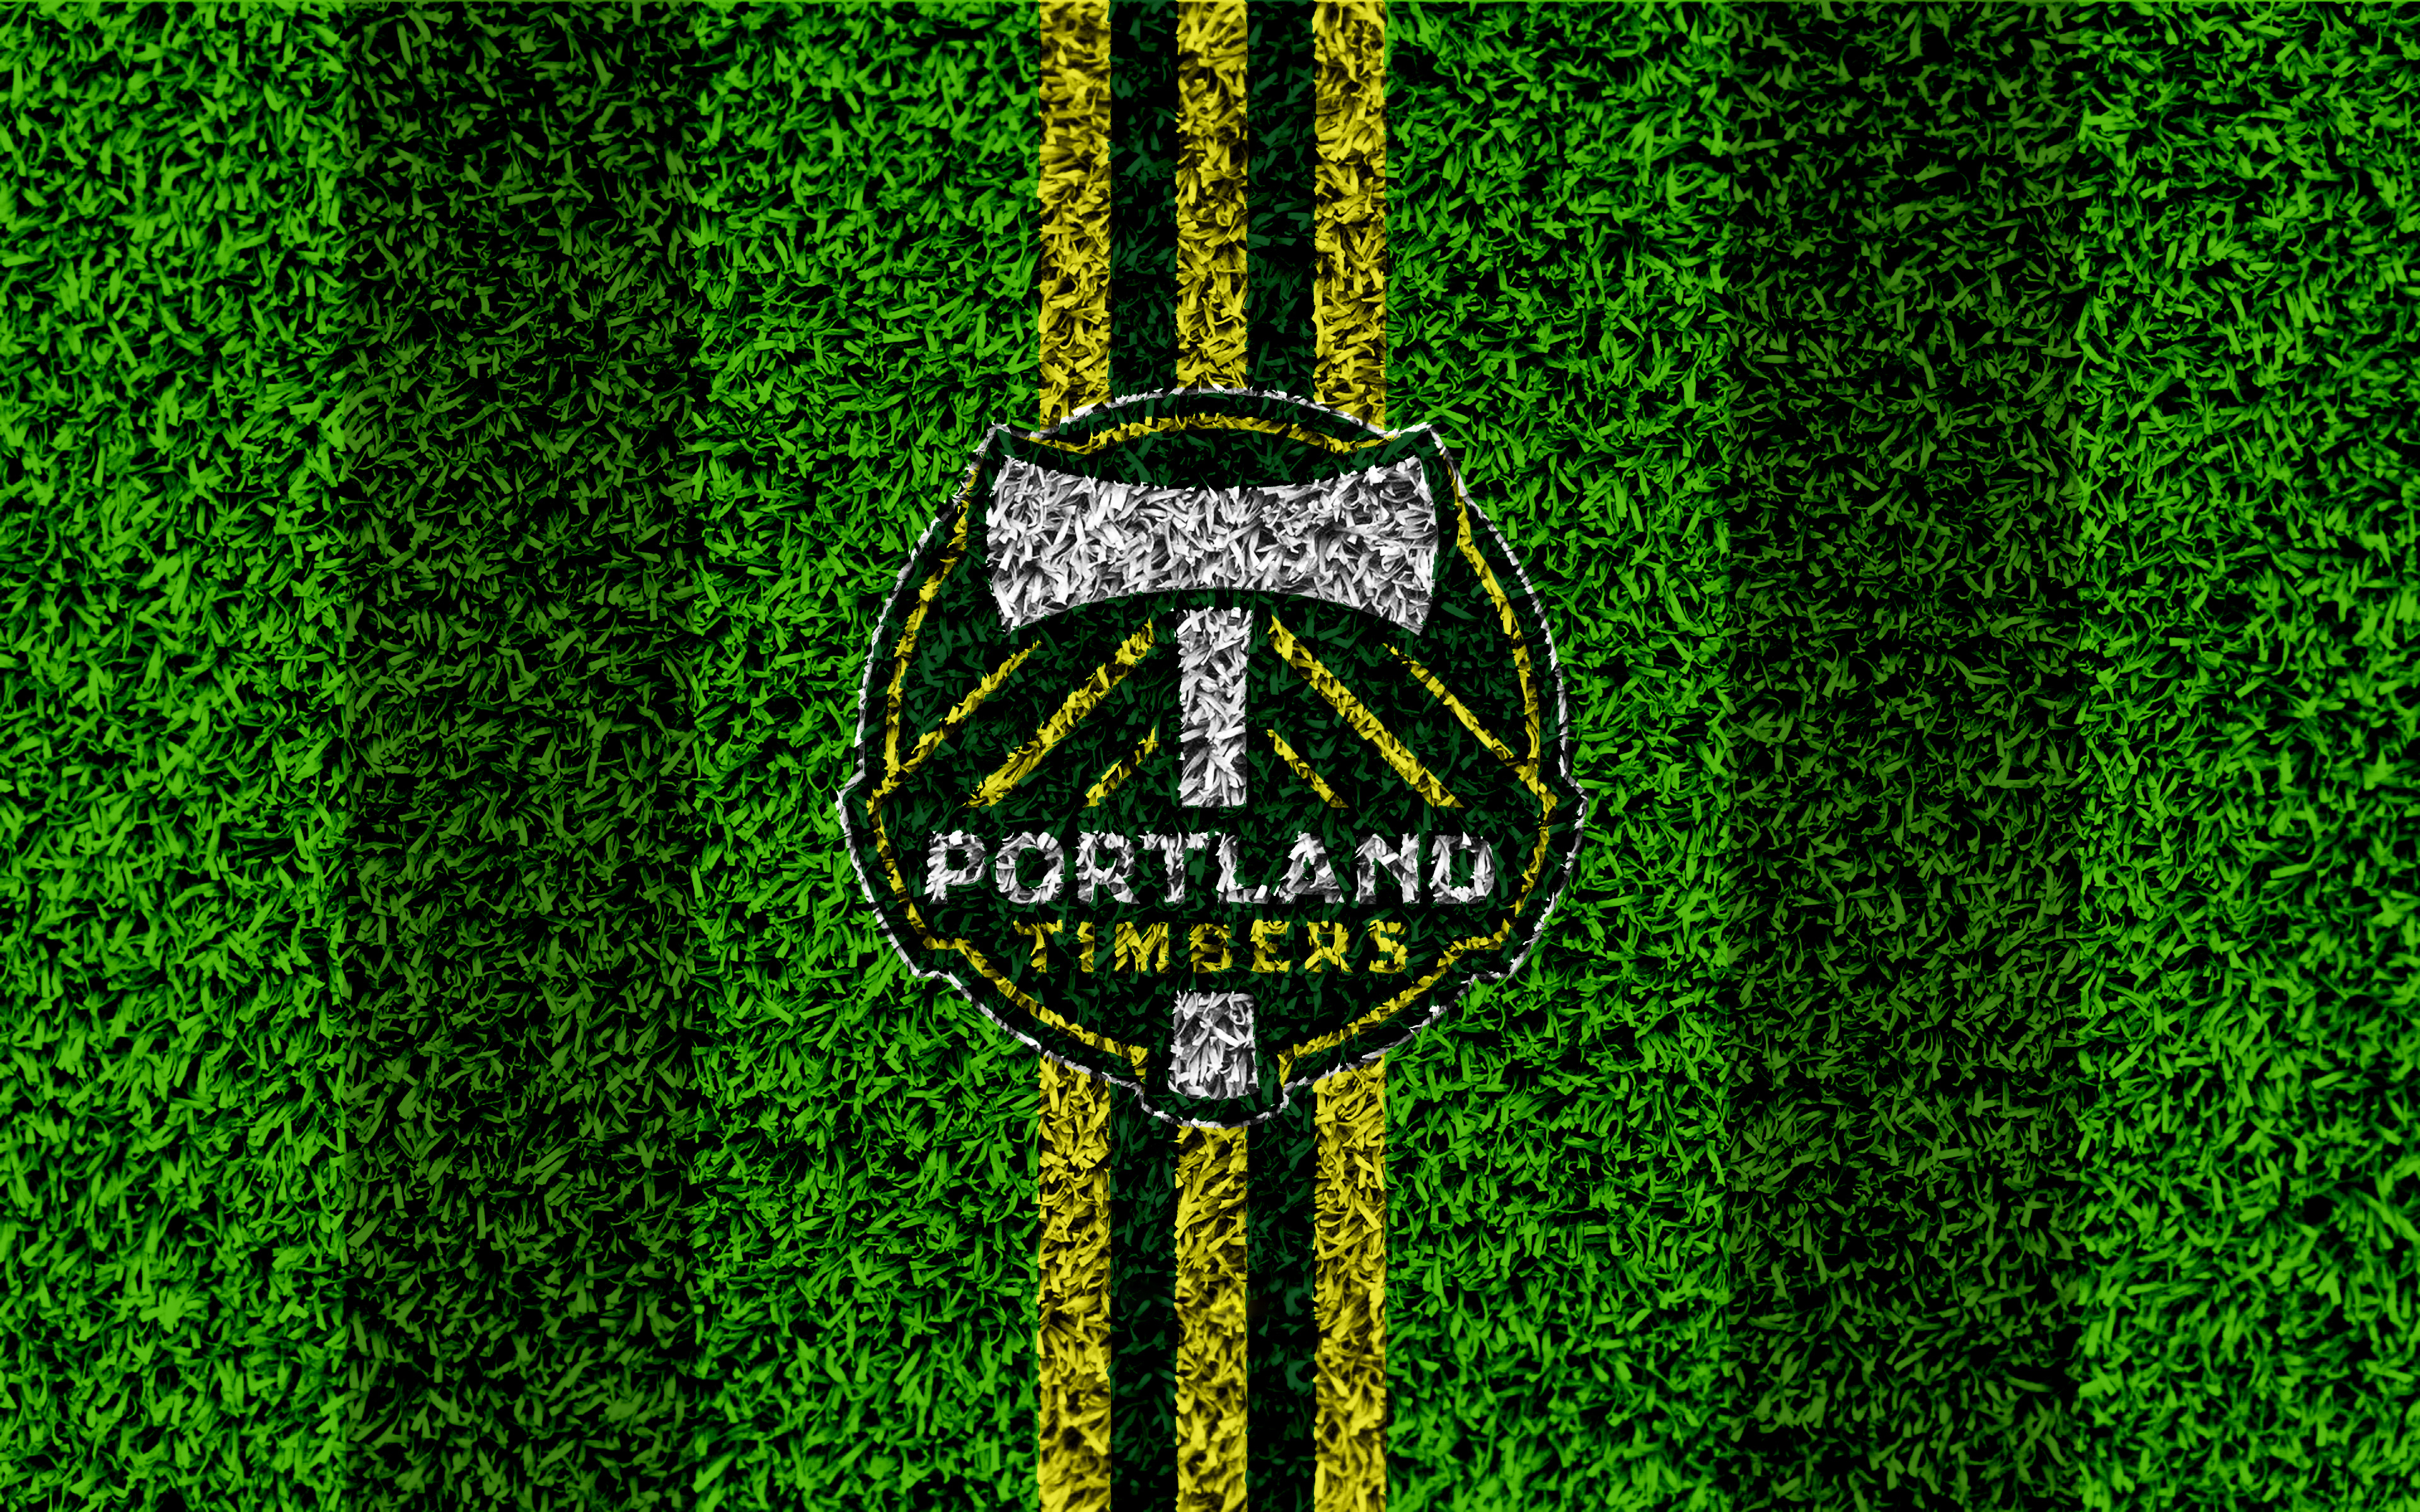 Handy-Wallpaper Sport, Fußball, Logo, Emblem, Portland Hölzer, Mls kostenlos herunterladen.